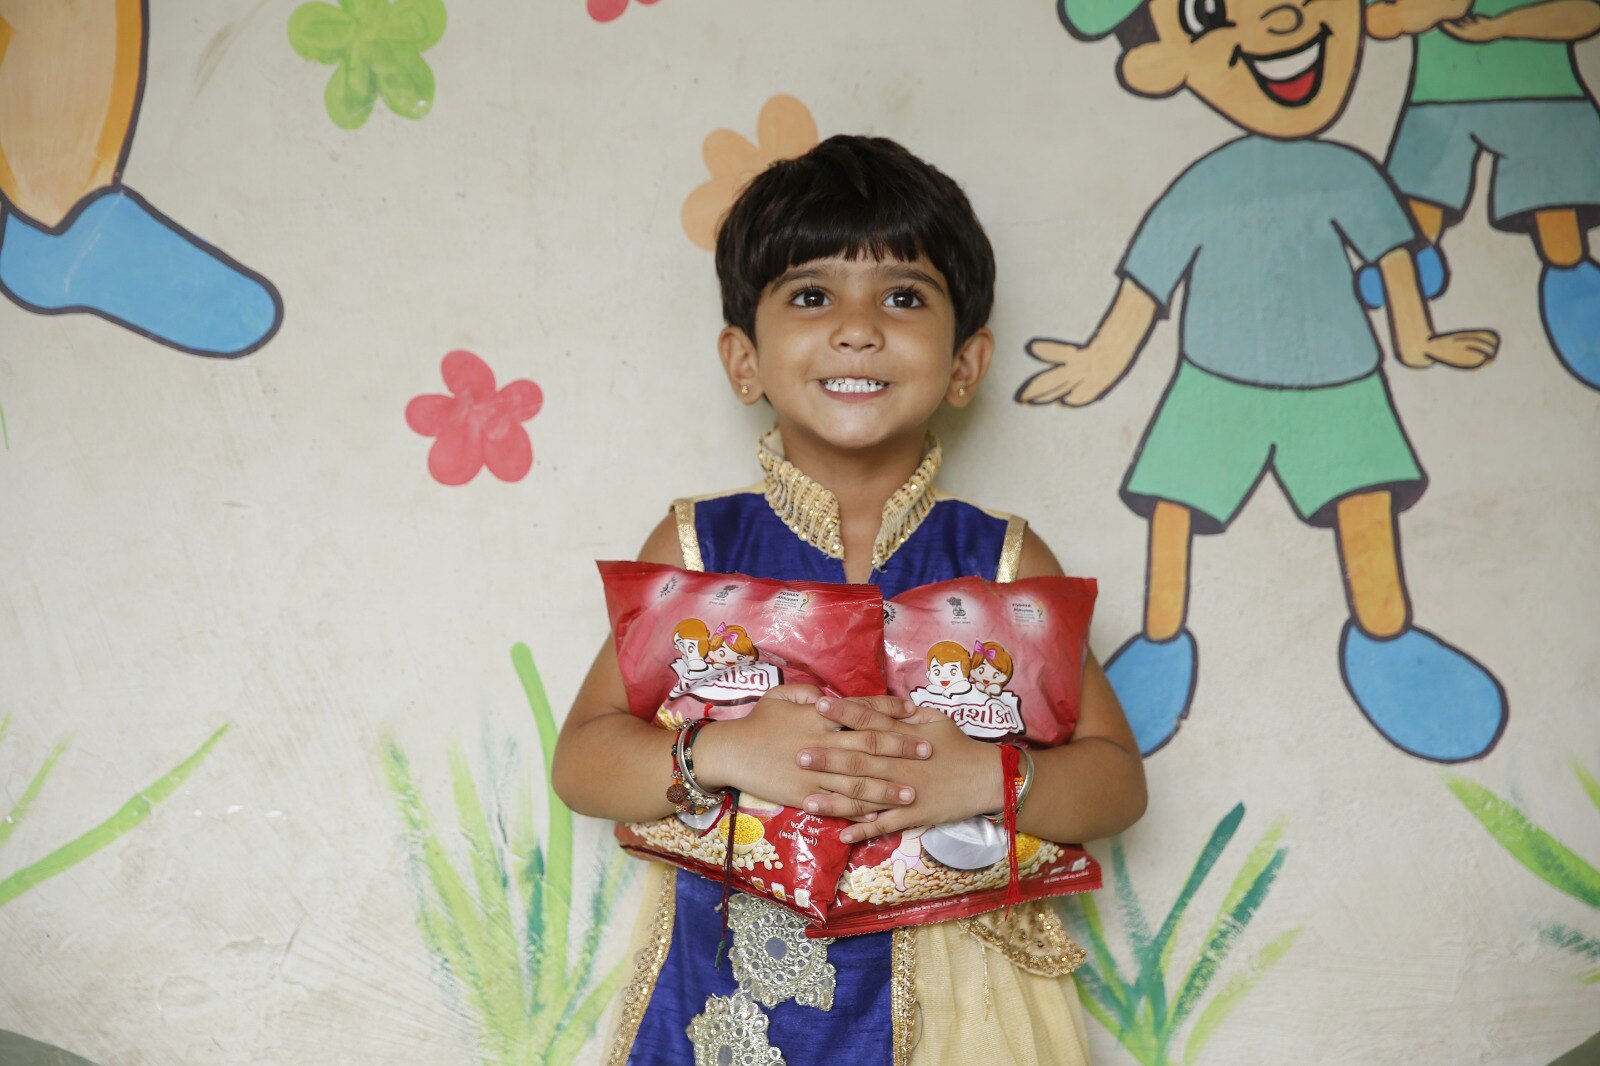 ગુજરાતની આંગણવાડીના 15 લાખથી વધુ બાળકો ટેક હોમ રાશન  દ્વારા મેળવે છે પોષણયુક્ત આહાર